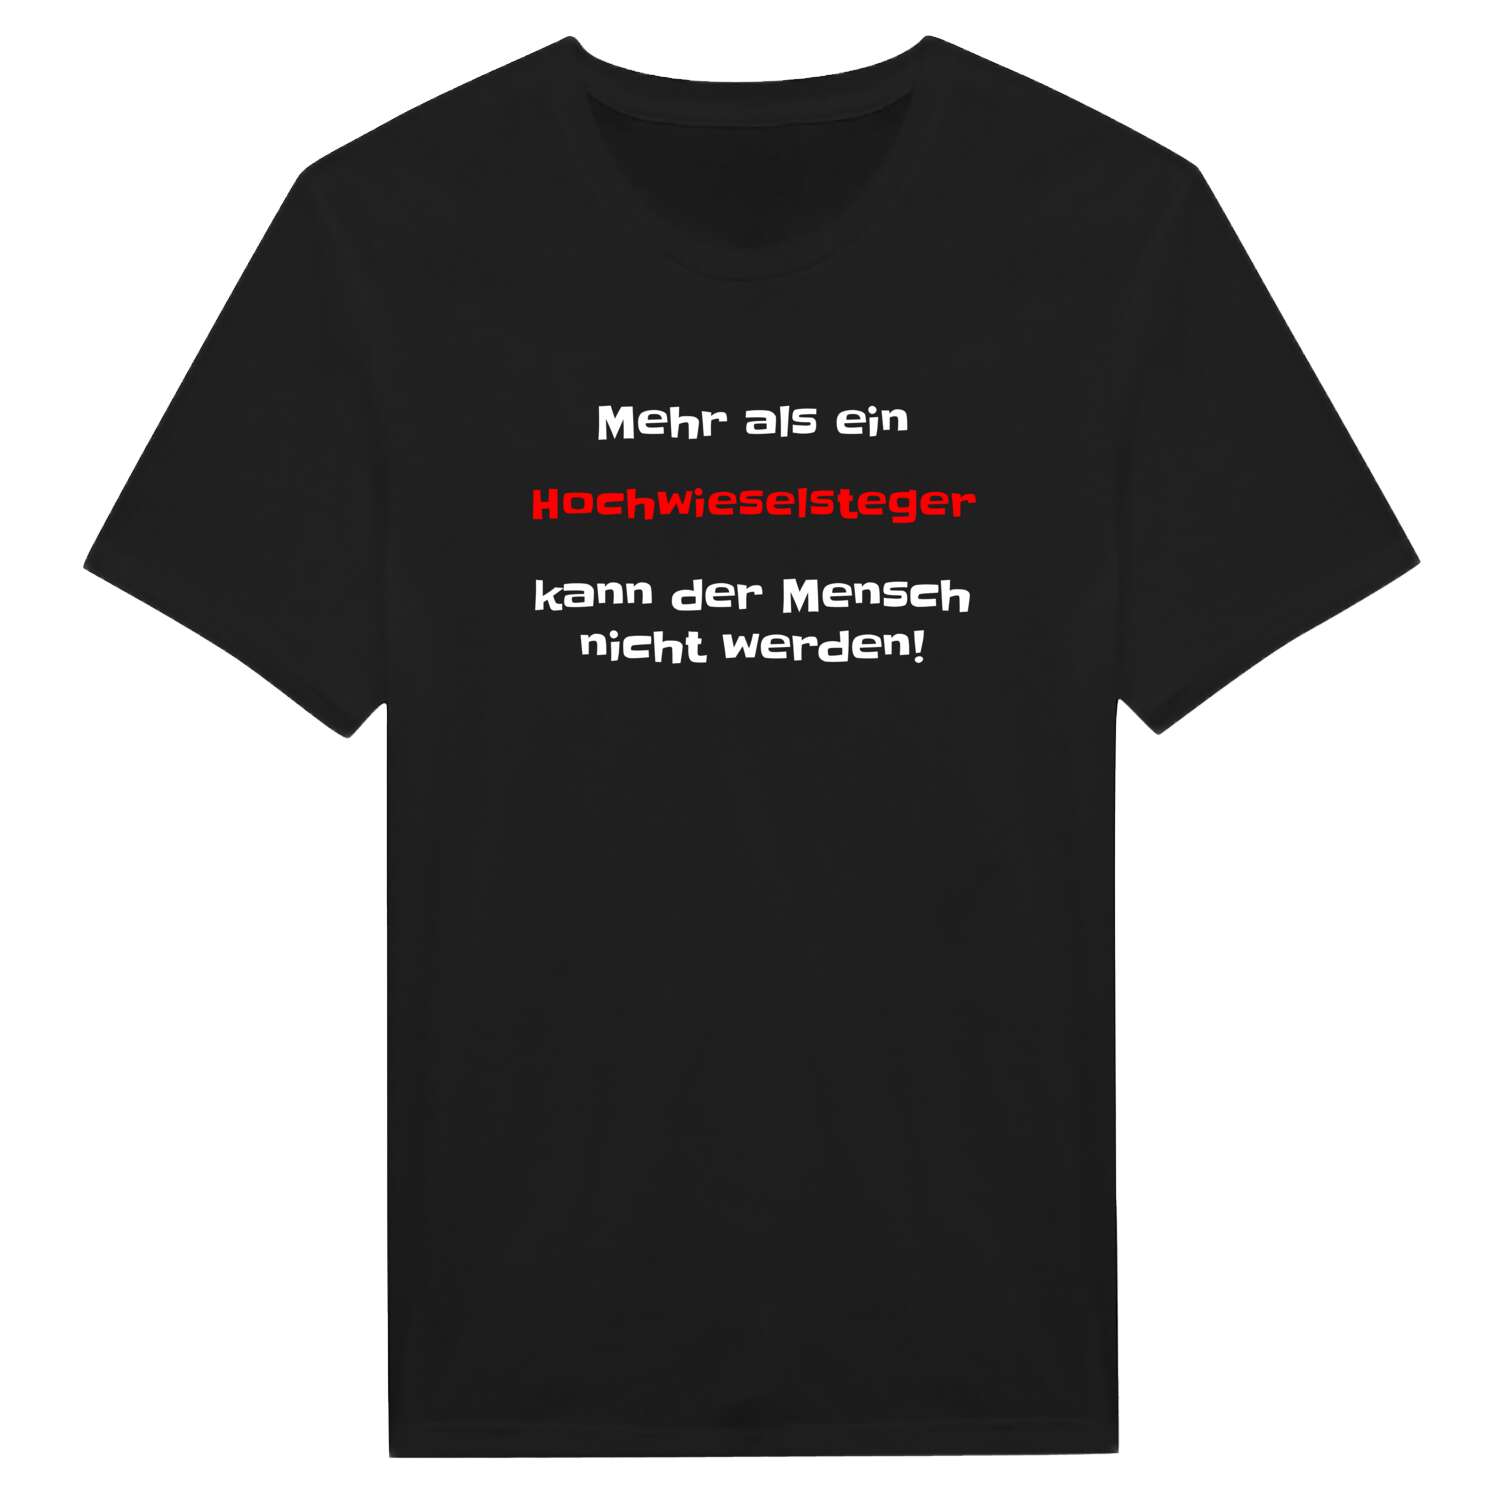 Hochwieselsteg T-Shirt »Mehr als ein«